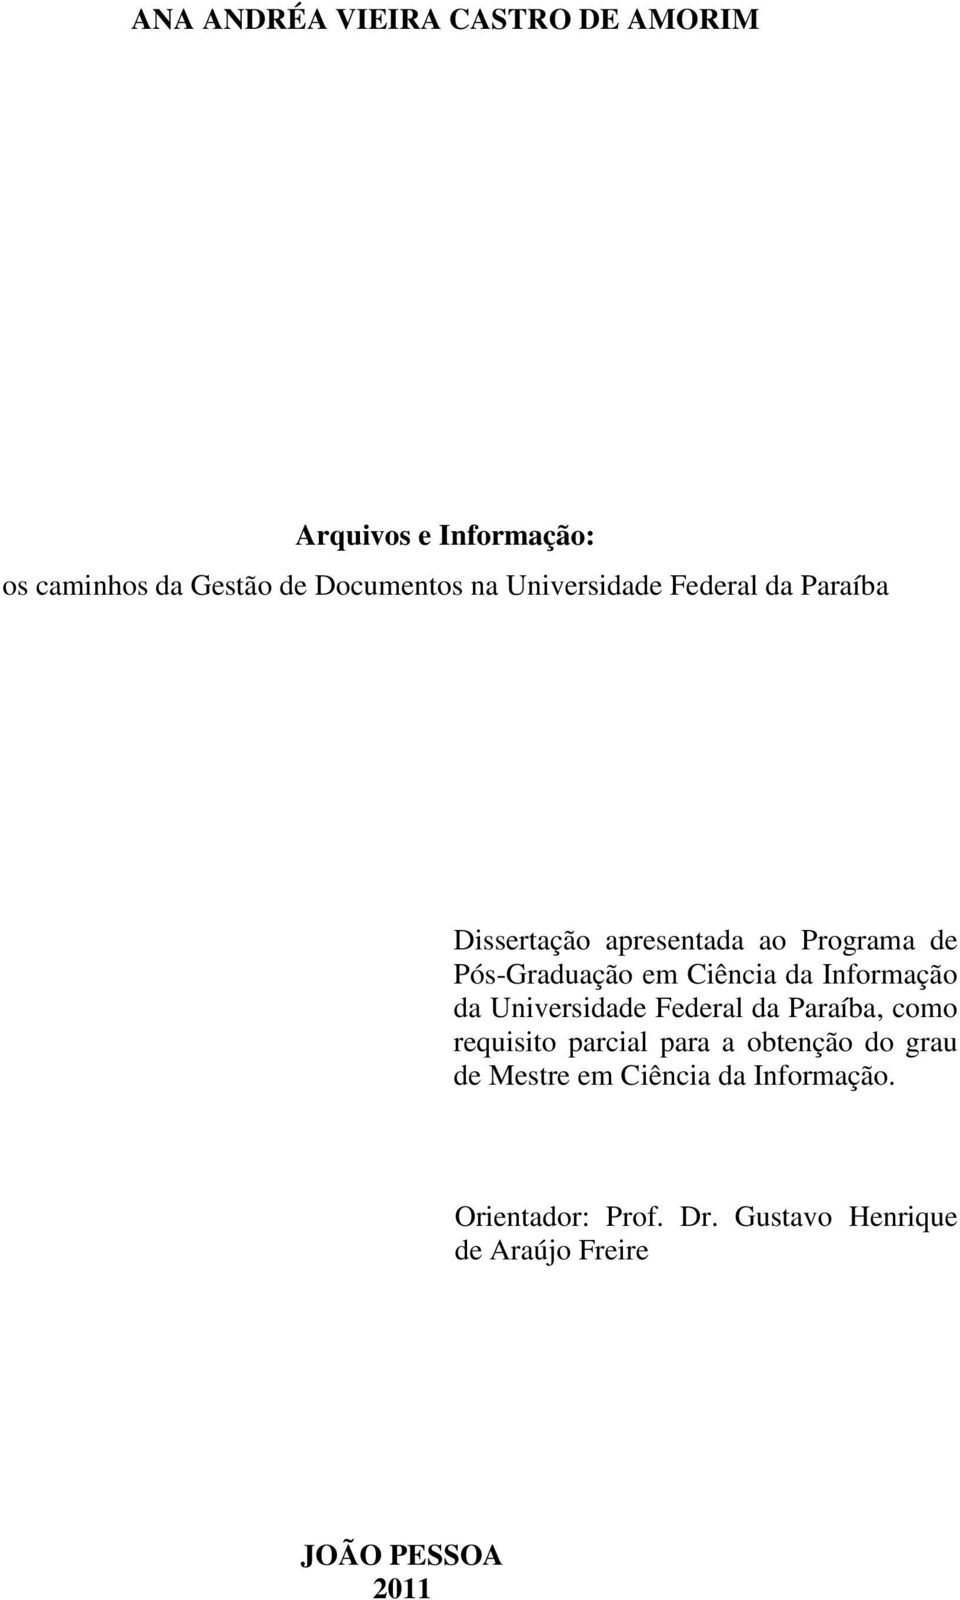 Informação da Universidade Federal da Paraíba, como requisito parcial para a obtenção do grau de